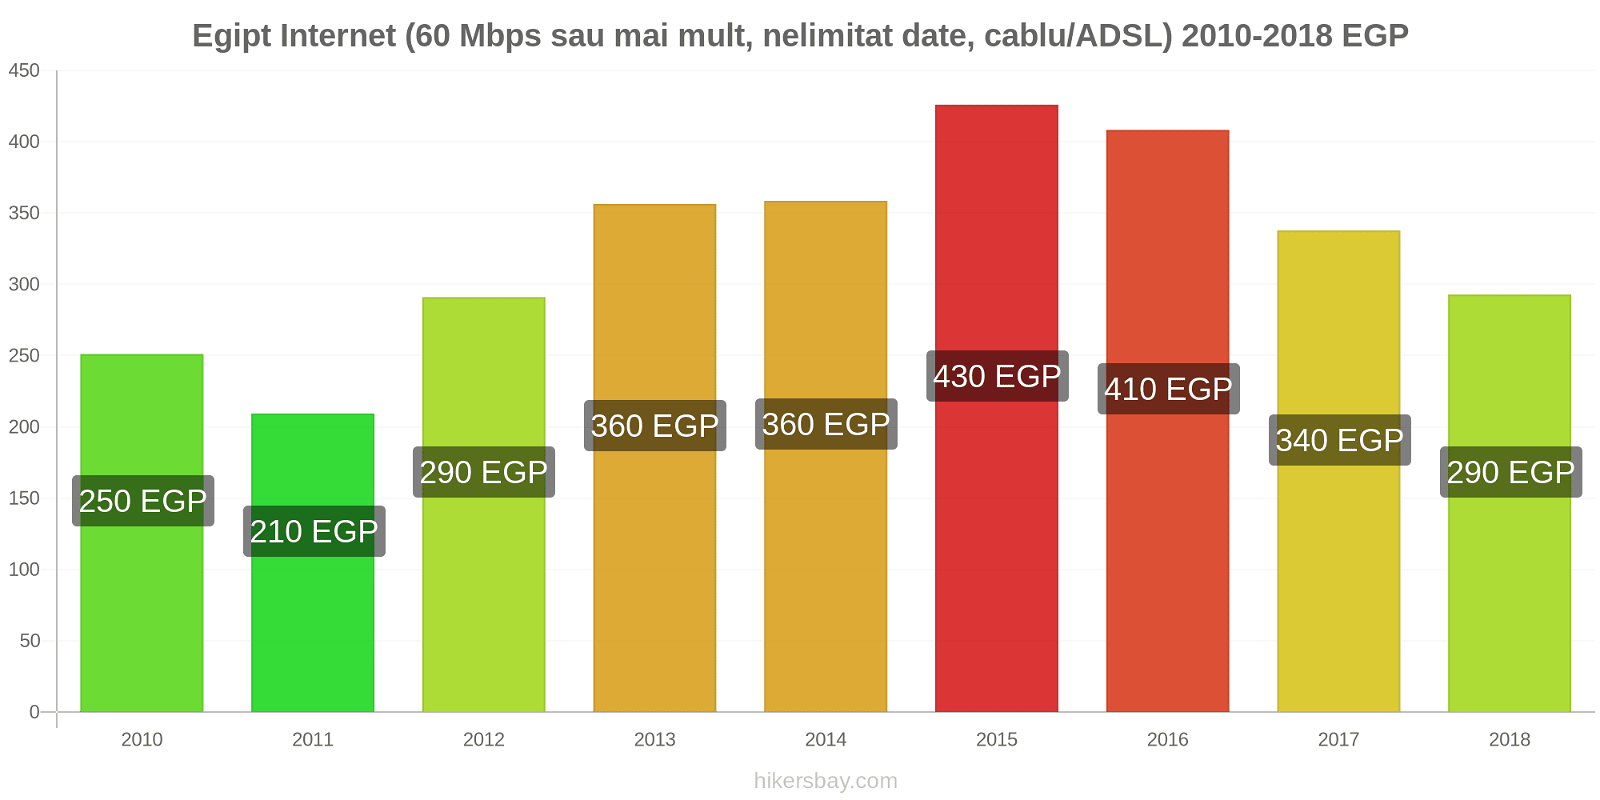 Egipt schimbări de prețuri Internet (60 Mbps sau mai mult, date nelimitate, cablu/ADSL) hikersbay.com